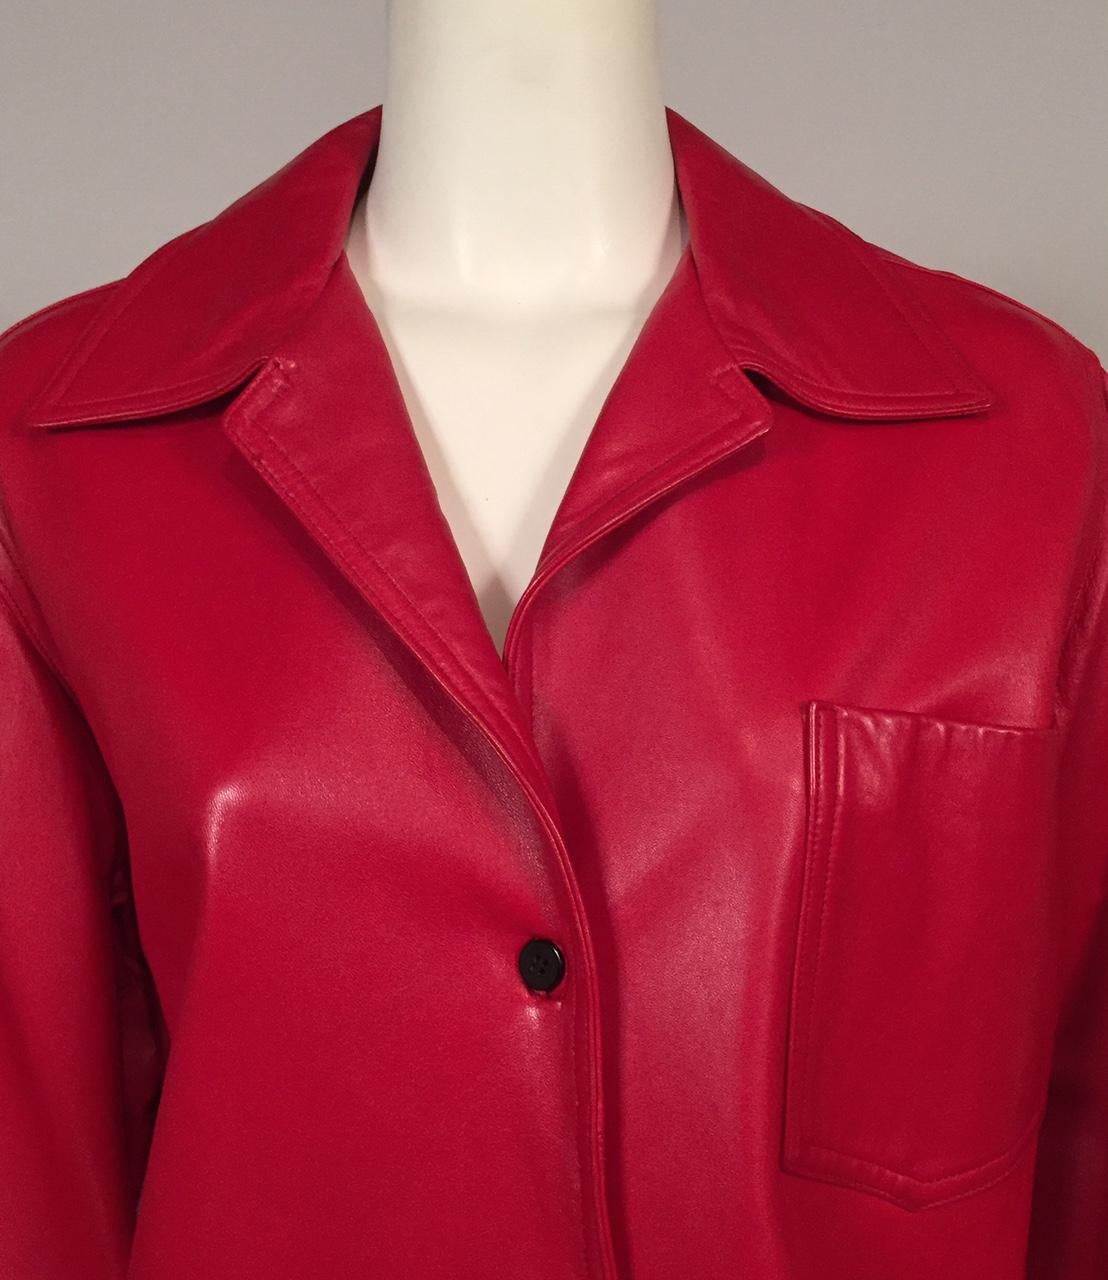 Women's Bill Blass Red Lambskin Shirt or Jacket